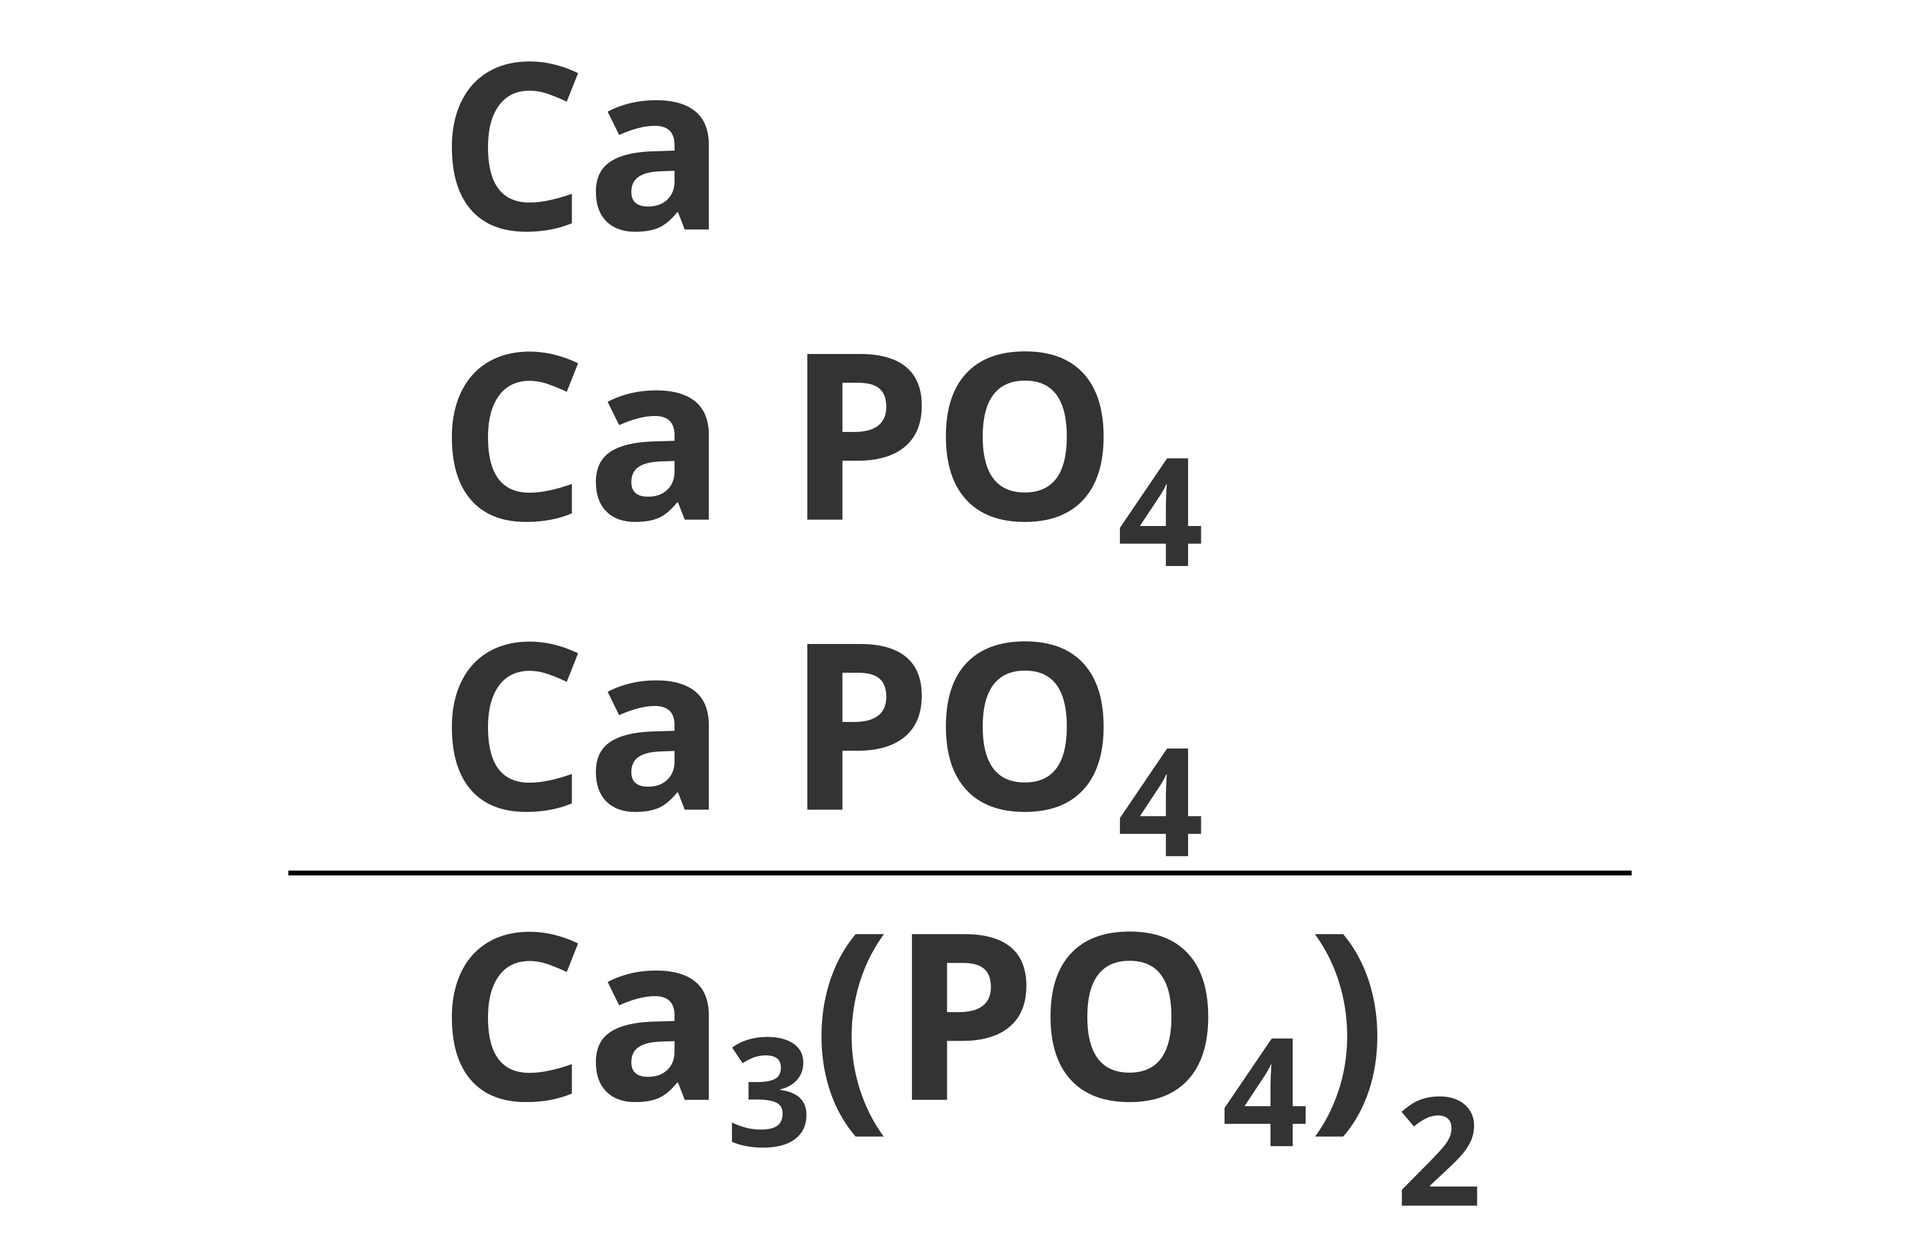 Ilustracja zawiera interpretację zapisu wzoru chemicznego wykorzystującego nawiasy. Obiektem analizy jest cząsteczka fosforanu wapnia, która na potrzeby interpretacji została rozpisana na trzy elementy składowe w postaci słupka przypominającego równanie matematyczne. W skład tego słupka wchodzą następujące elementy składowe: Ca, oraz dwie grupy CaPO4. Pozwala to łatwo obliczyć liczbę poszczególnych atomów w cząsteczce.